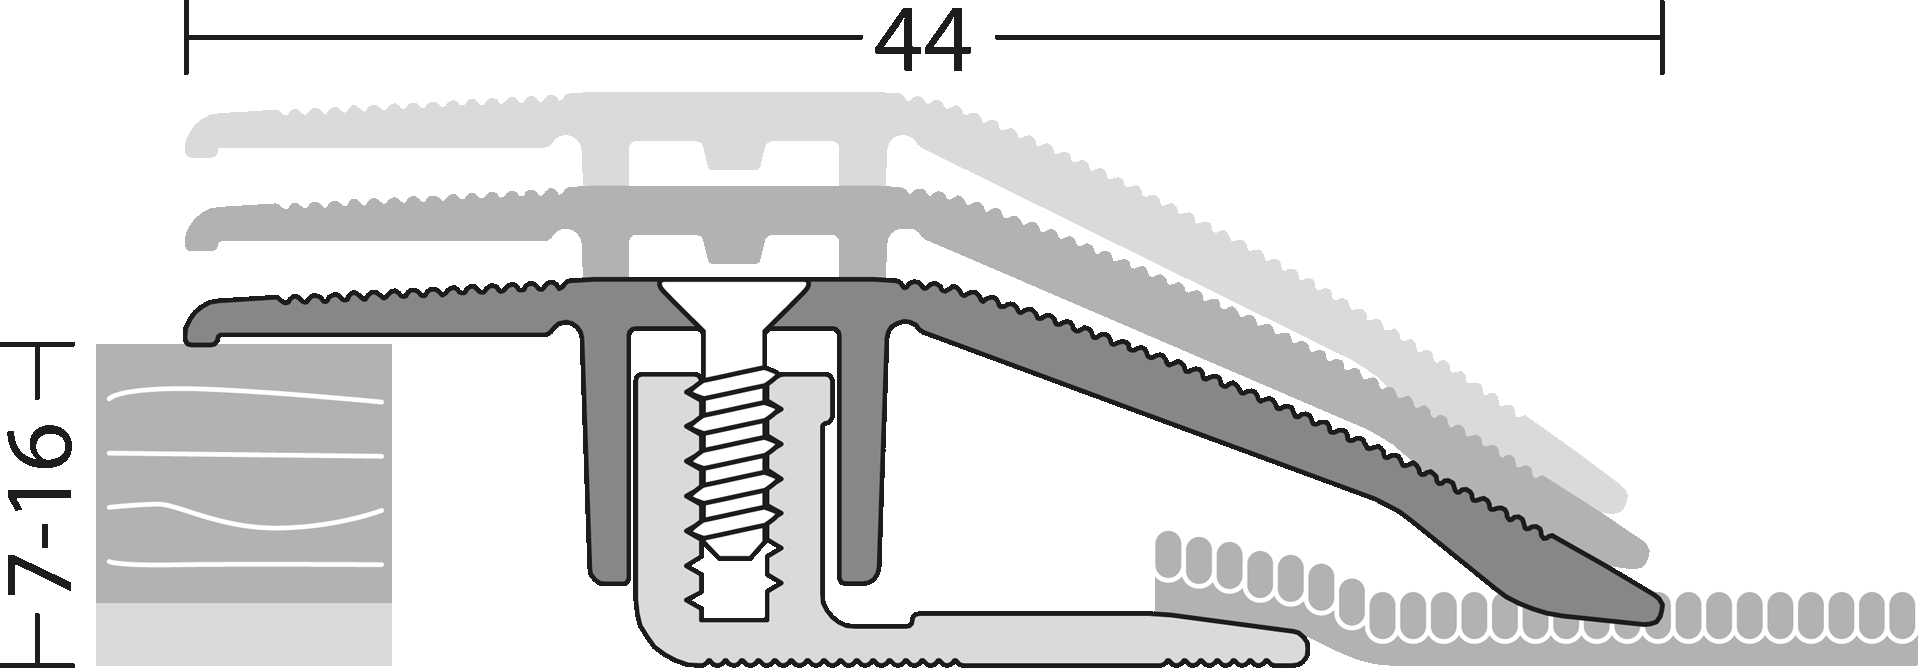 Anpassungsprofil Parkett & Laminatböden Detail